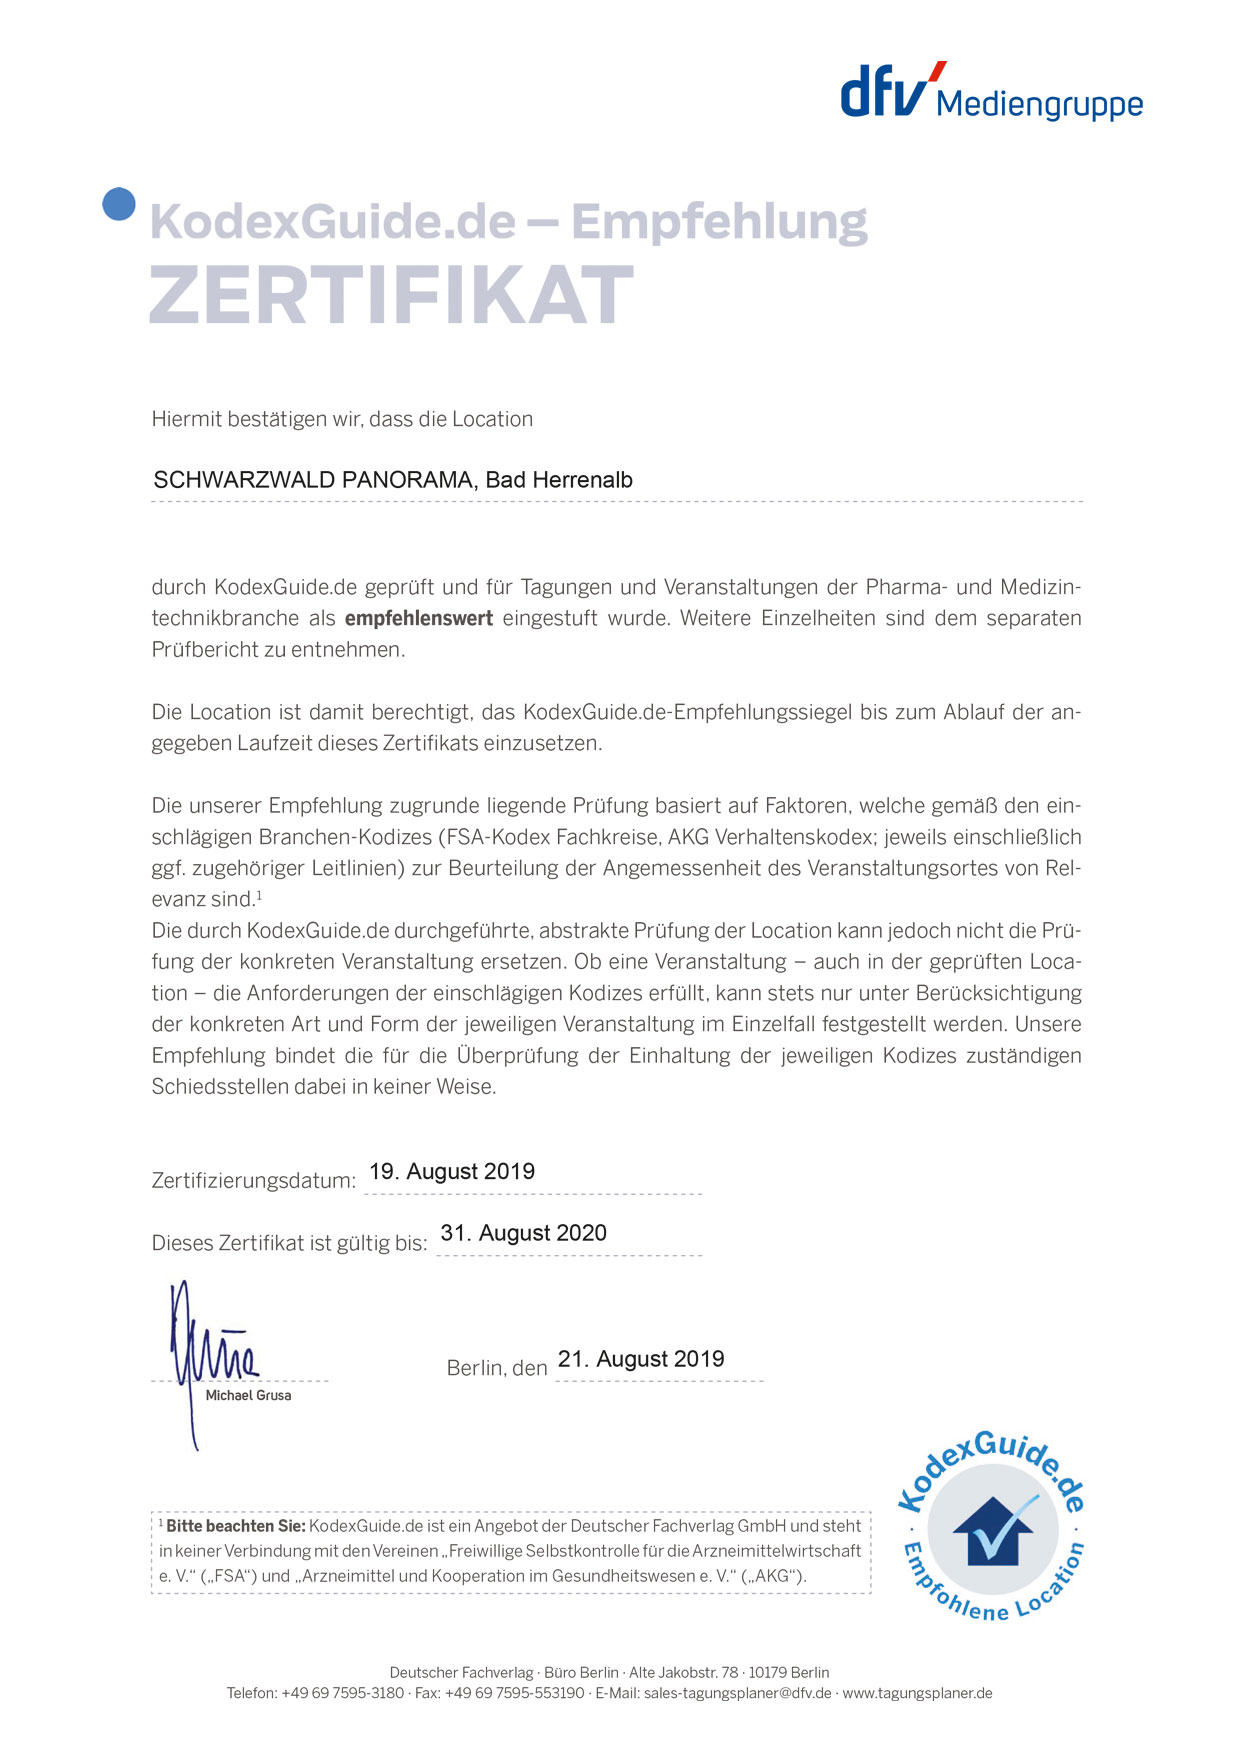 Zertifikat KodexGuide.de 2019/2020 für das Schwarzwald Panorama als empfehlenswerte Location für Tagungen und Veranstaltungen